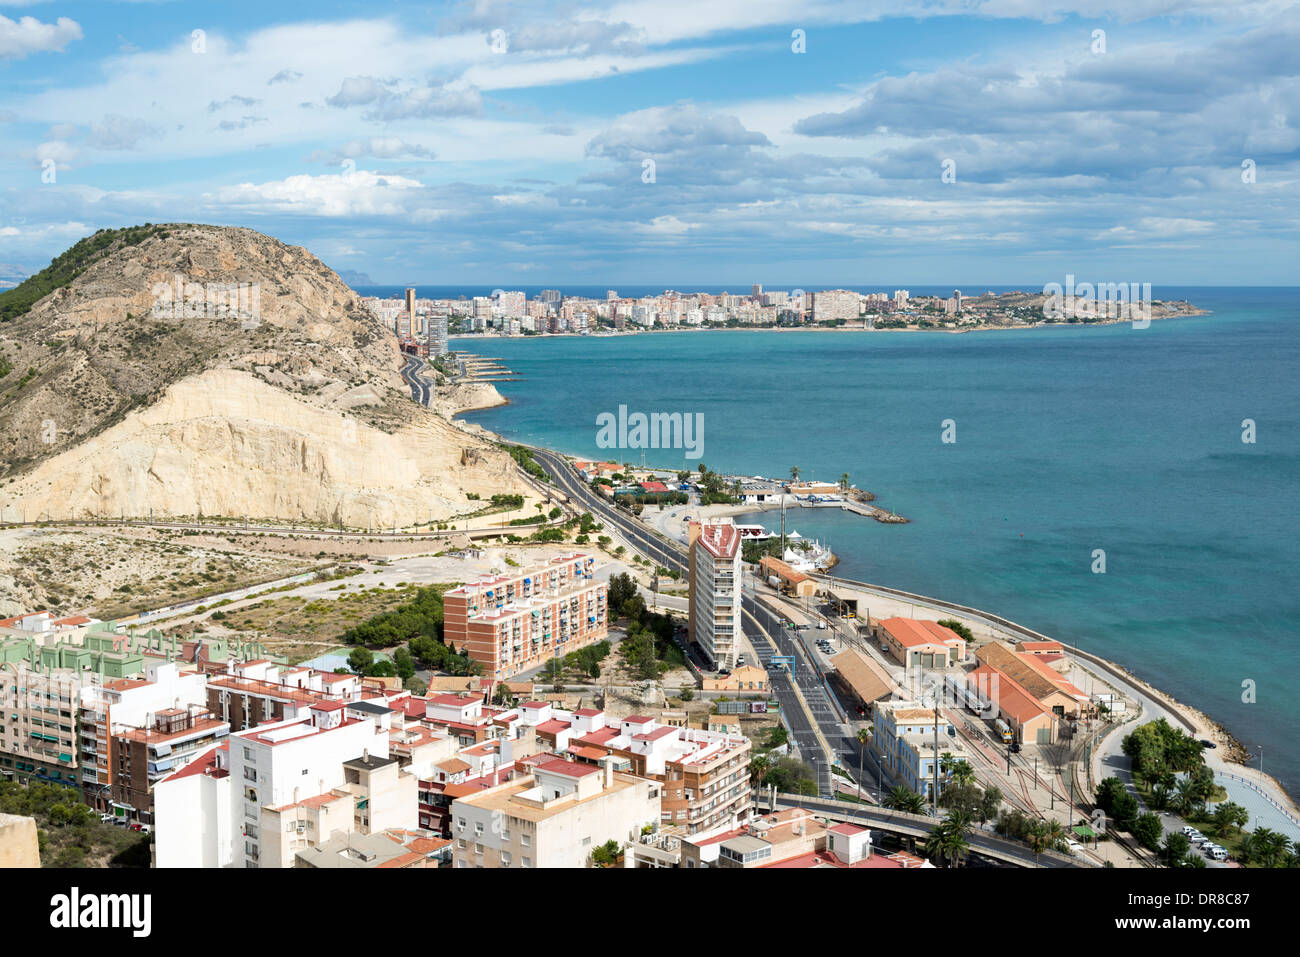 View of the sea from Santa Barbara Castle, Alicante, Costa Blanca, Spain Stock Photo